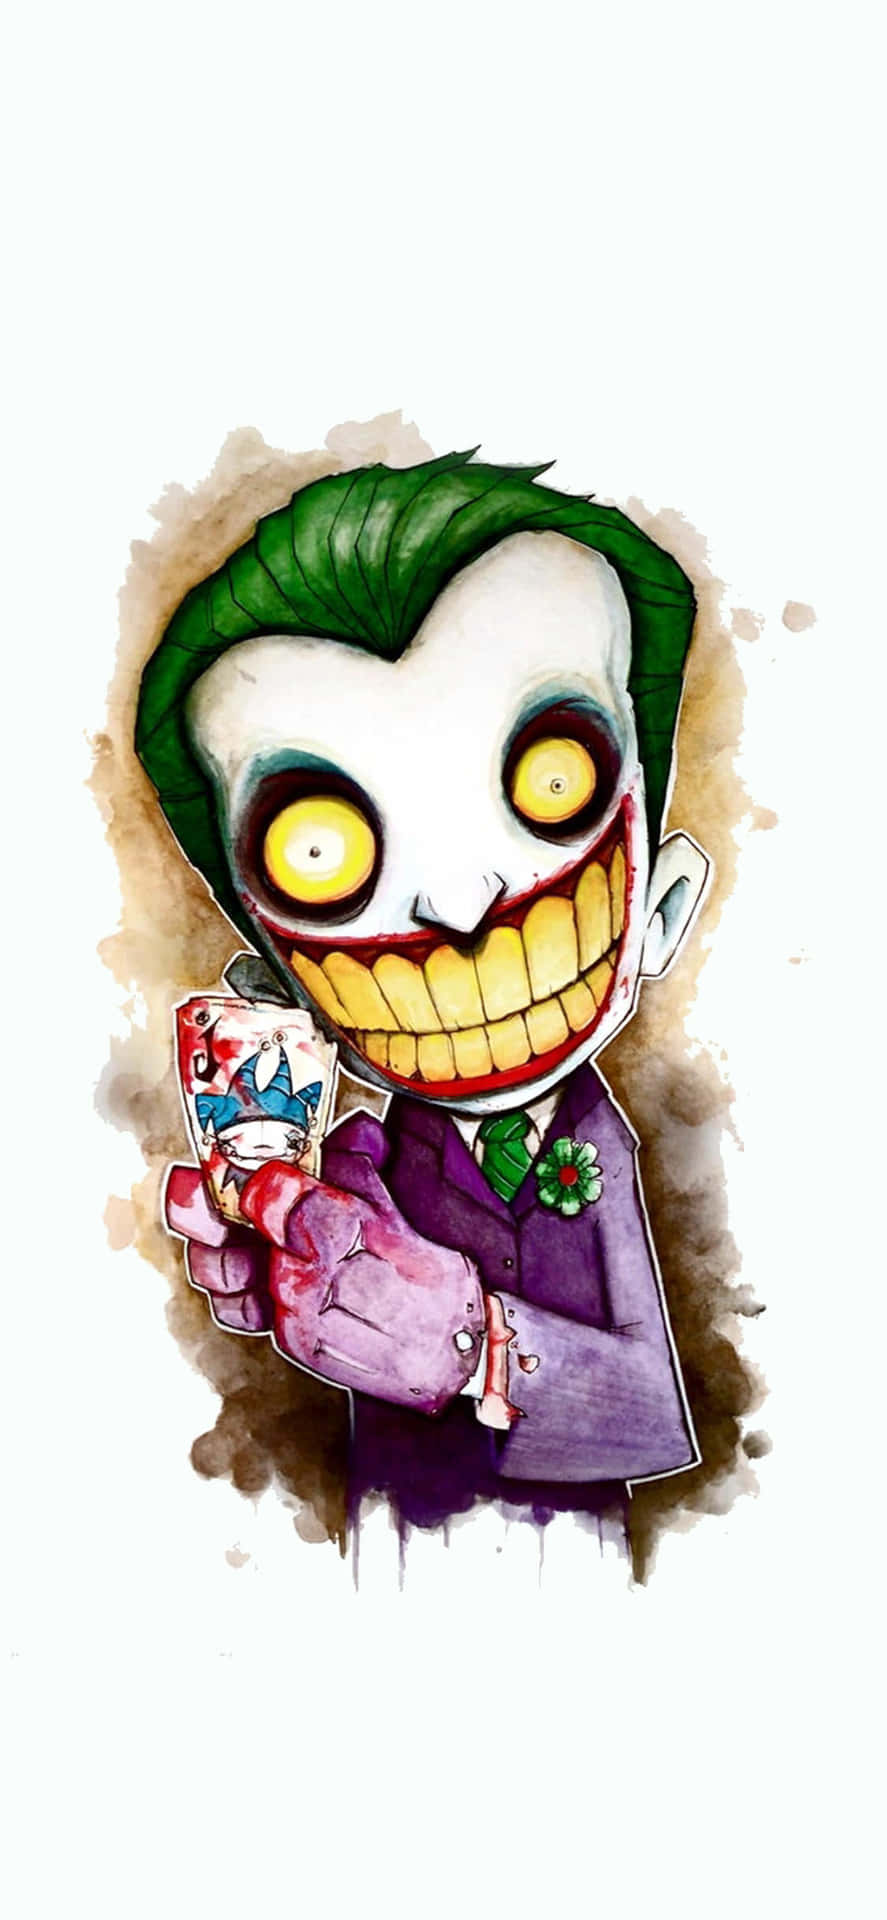 A Cartoon Of A Joker Holding A Candy Wallpaper